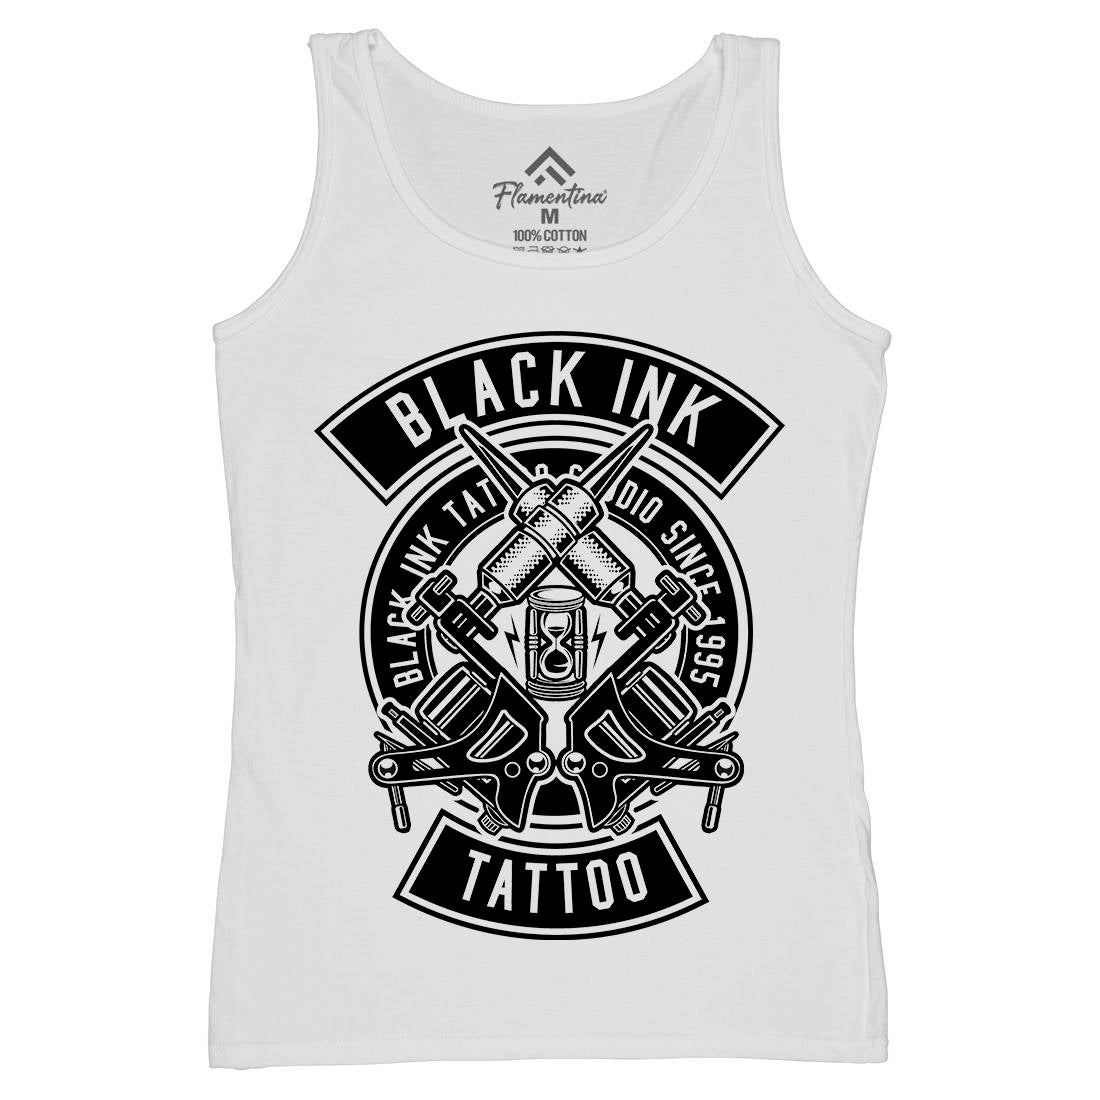 Black Ink Womens Organic Tank Top Vest Tattoo B500